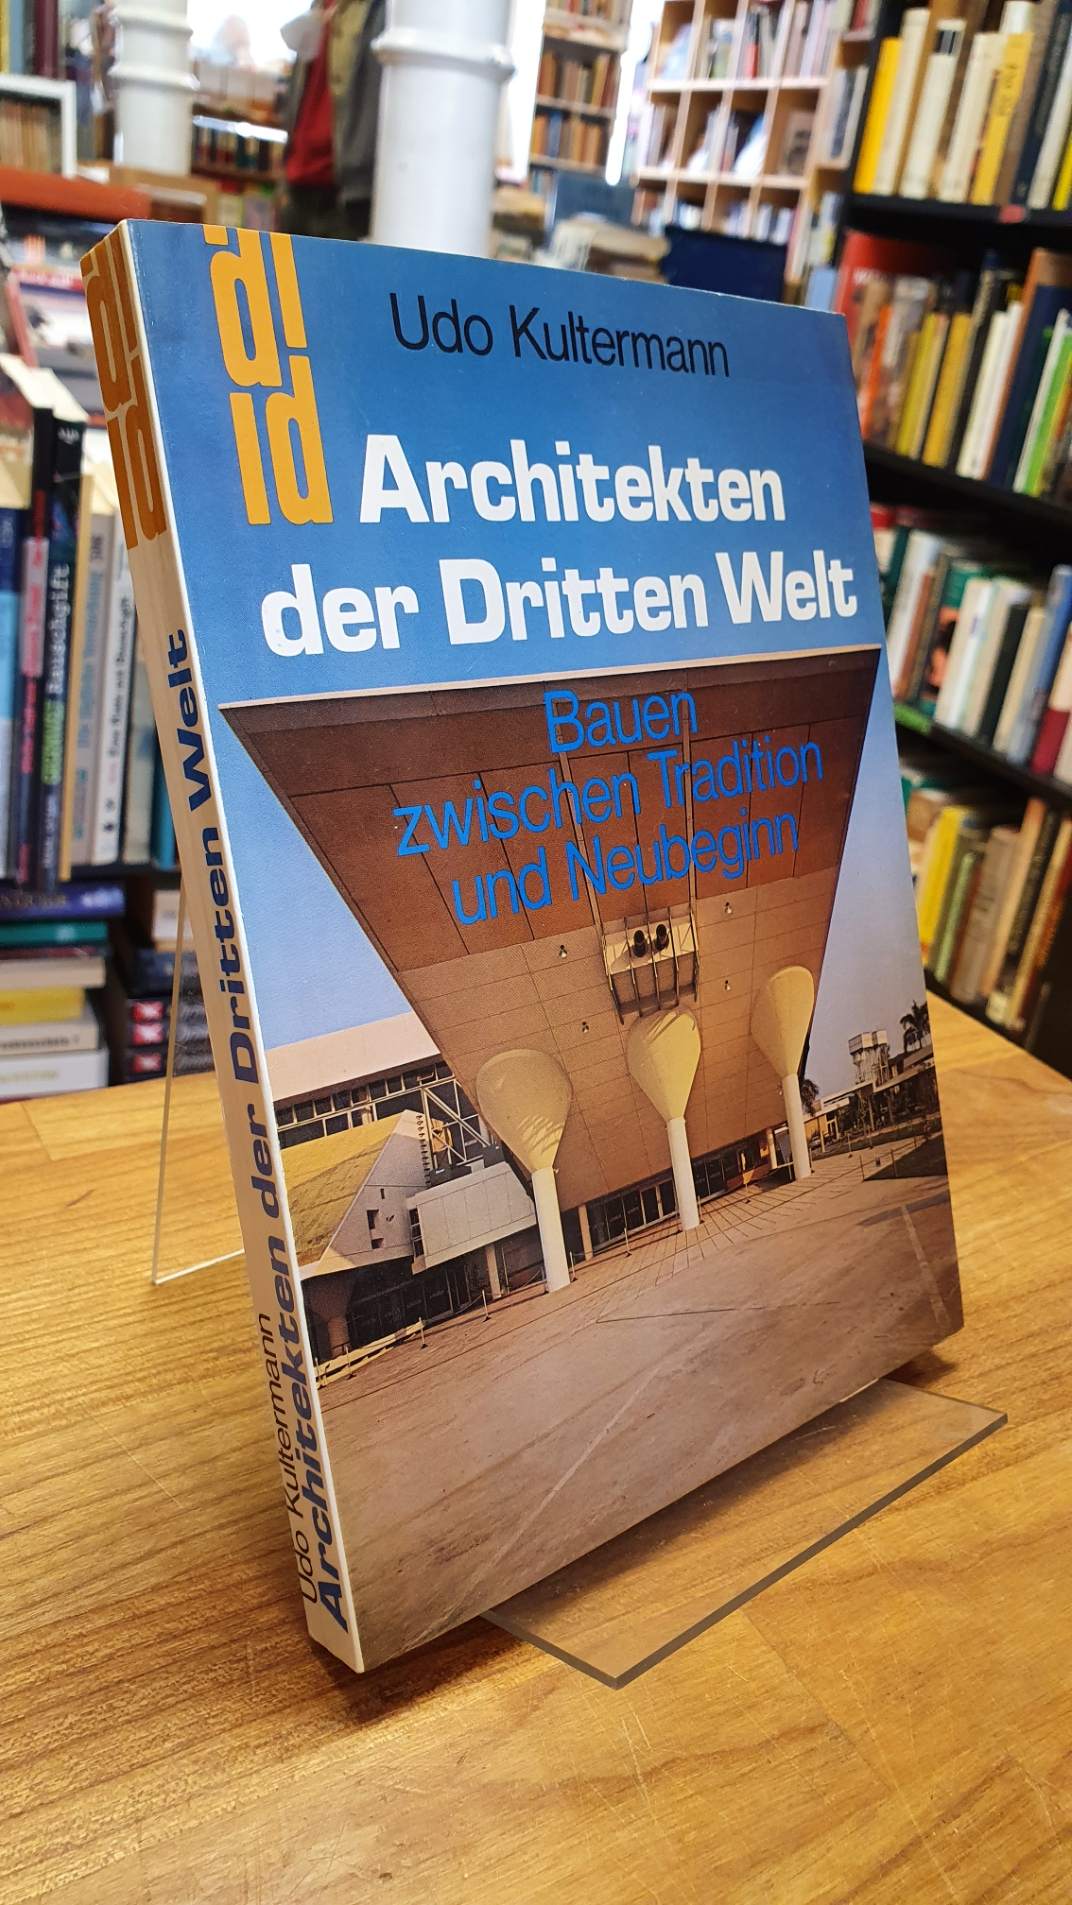 Kultermann, Architekten der Dritten Welt – Bauen zwischen Tradition und Neubegin